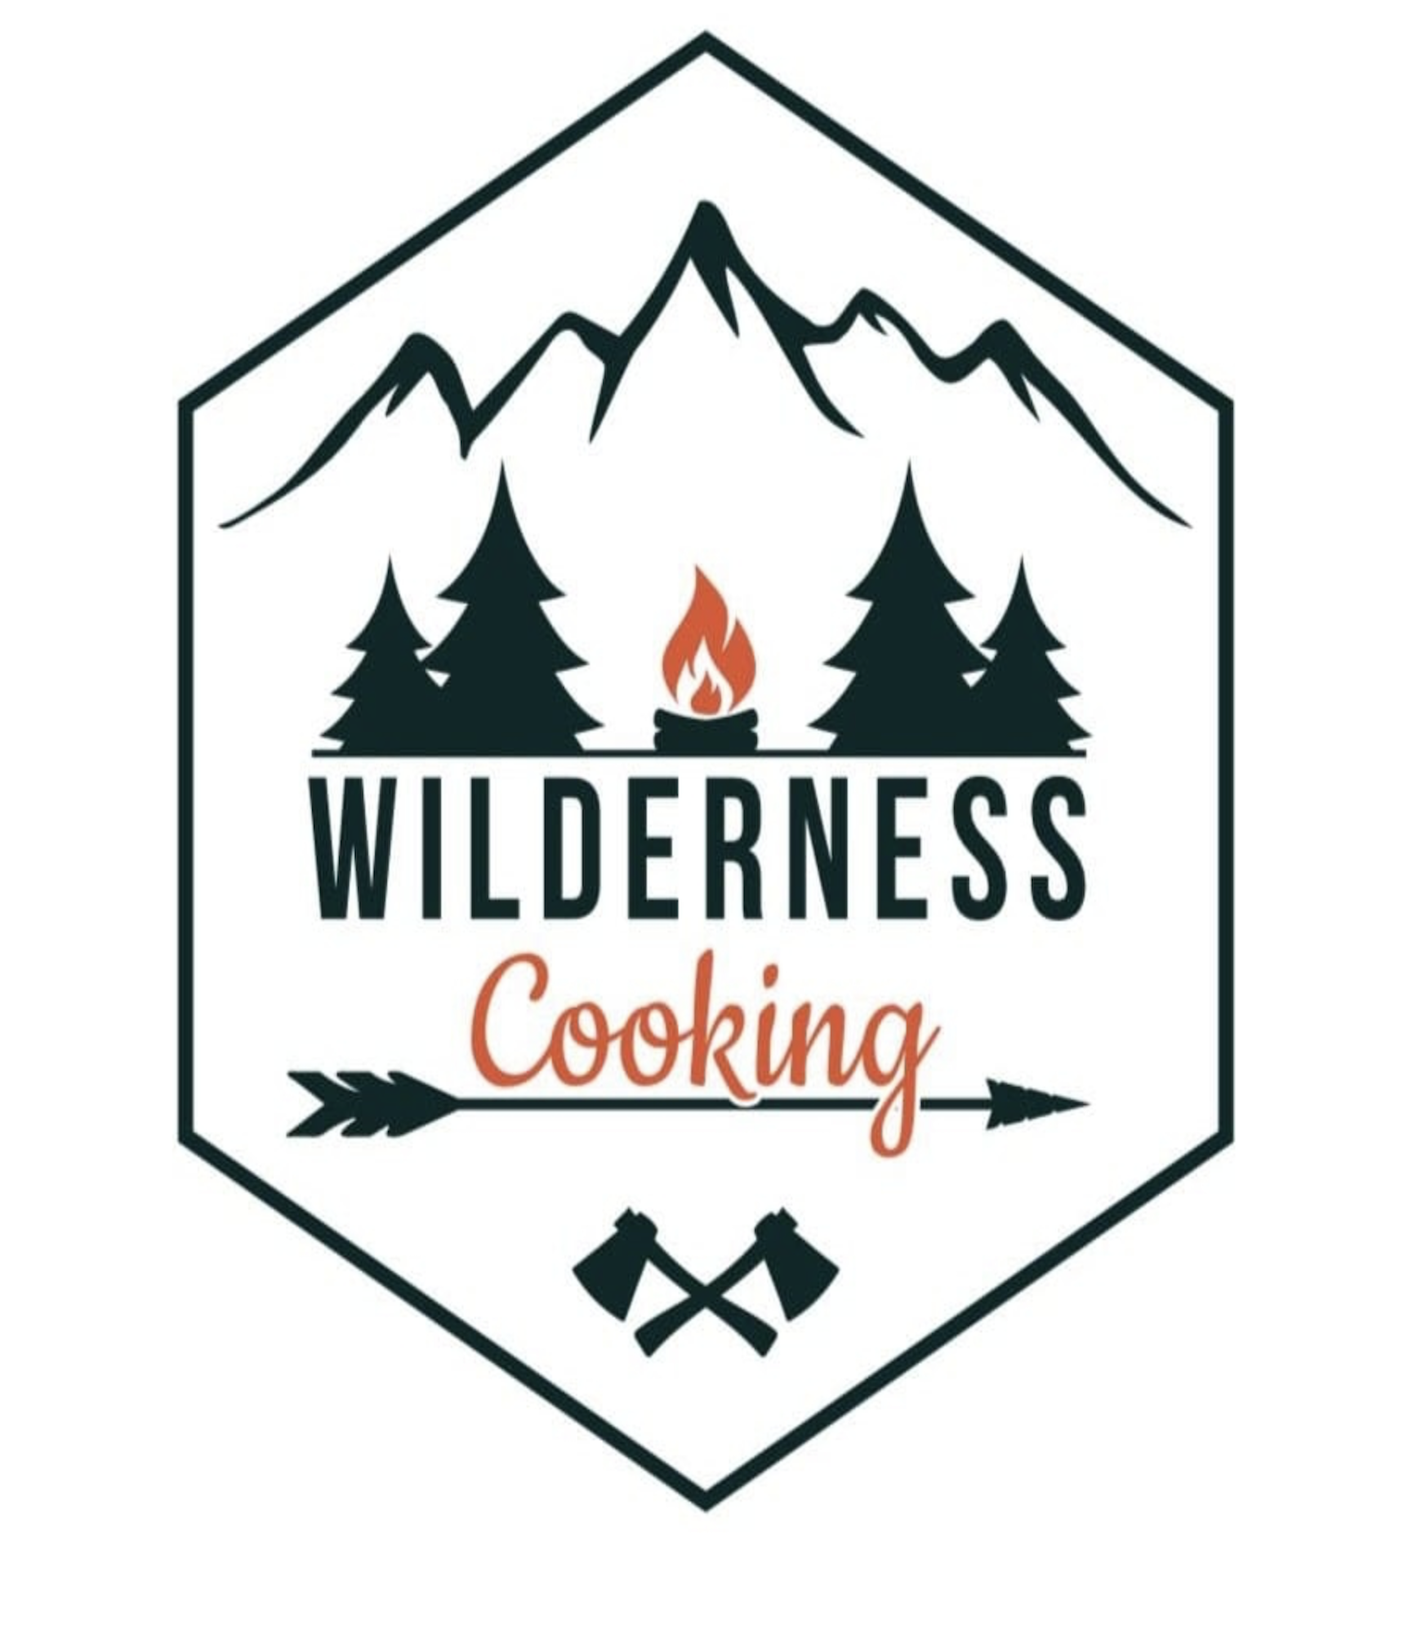 Wilderness Cooking  - buiten koken  - groot assortiment aan buiten kook artikelen 